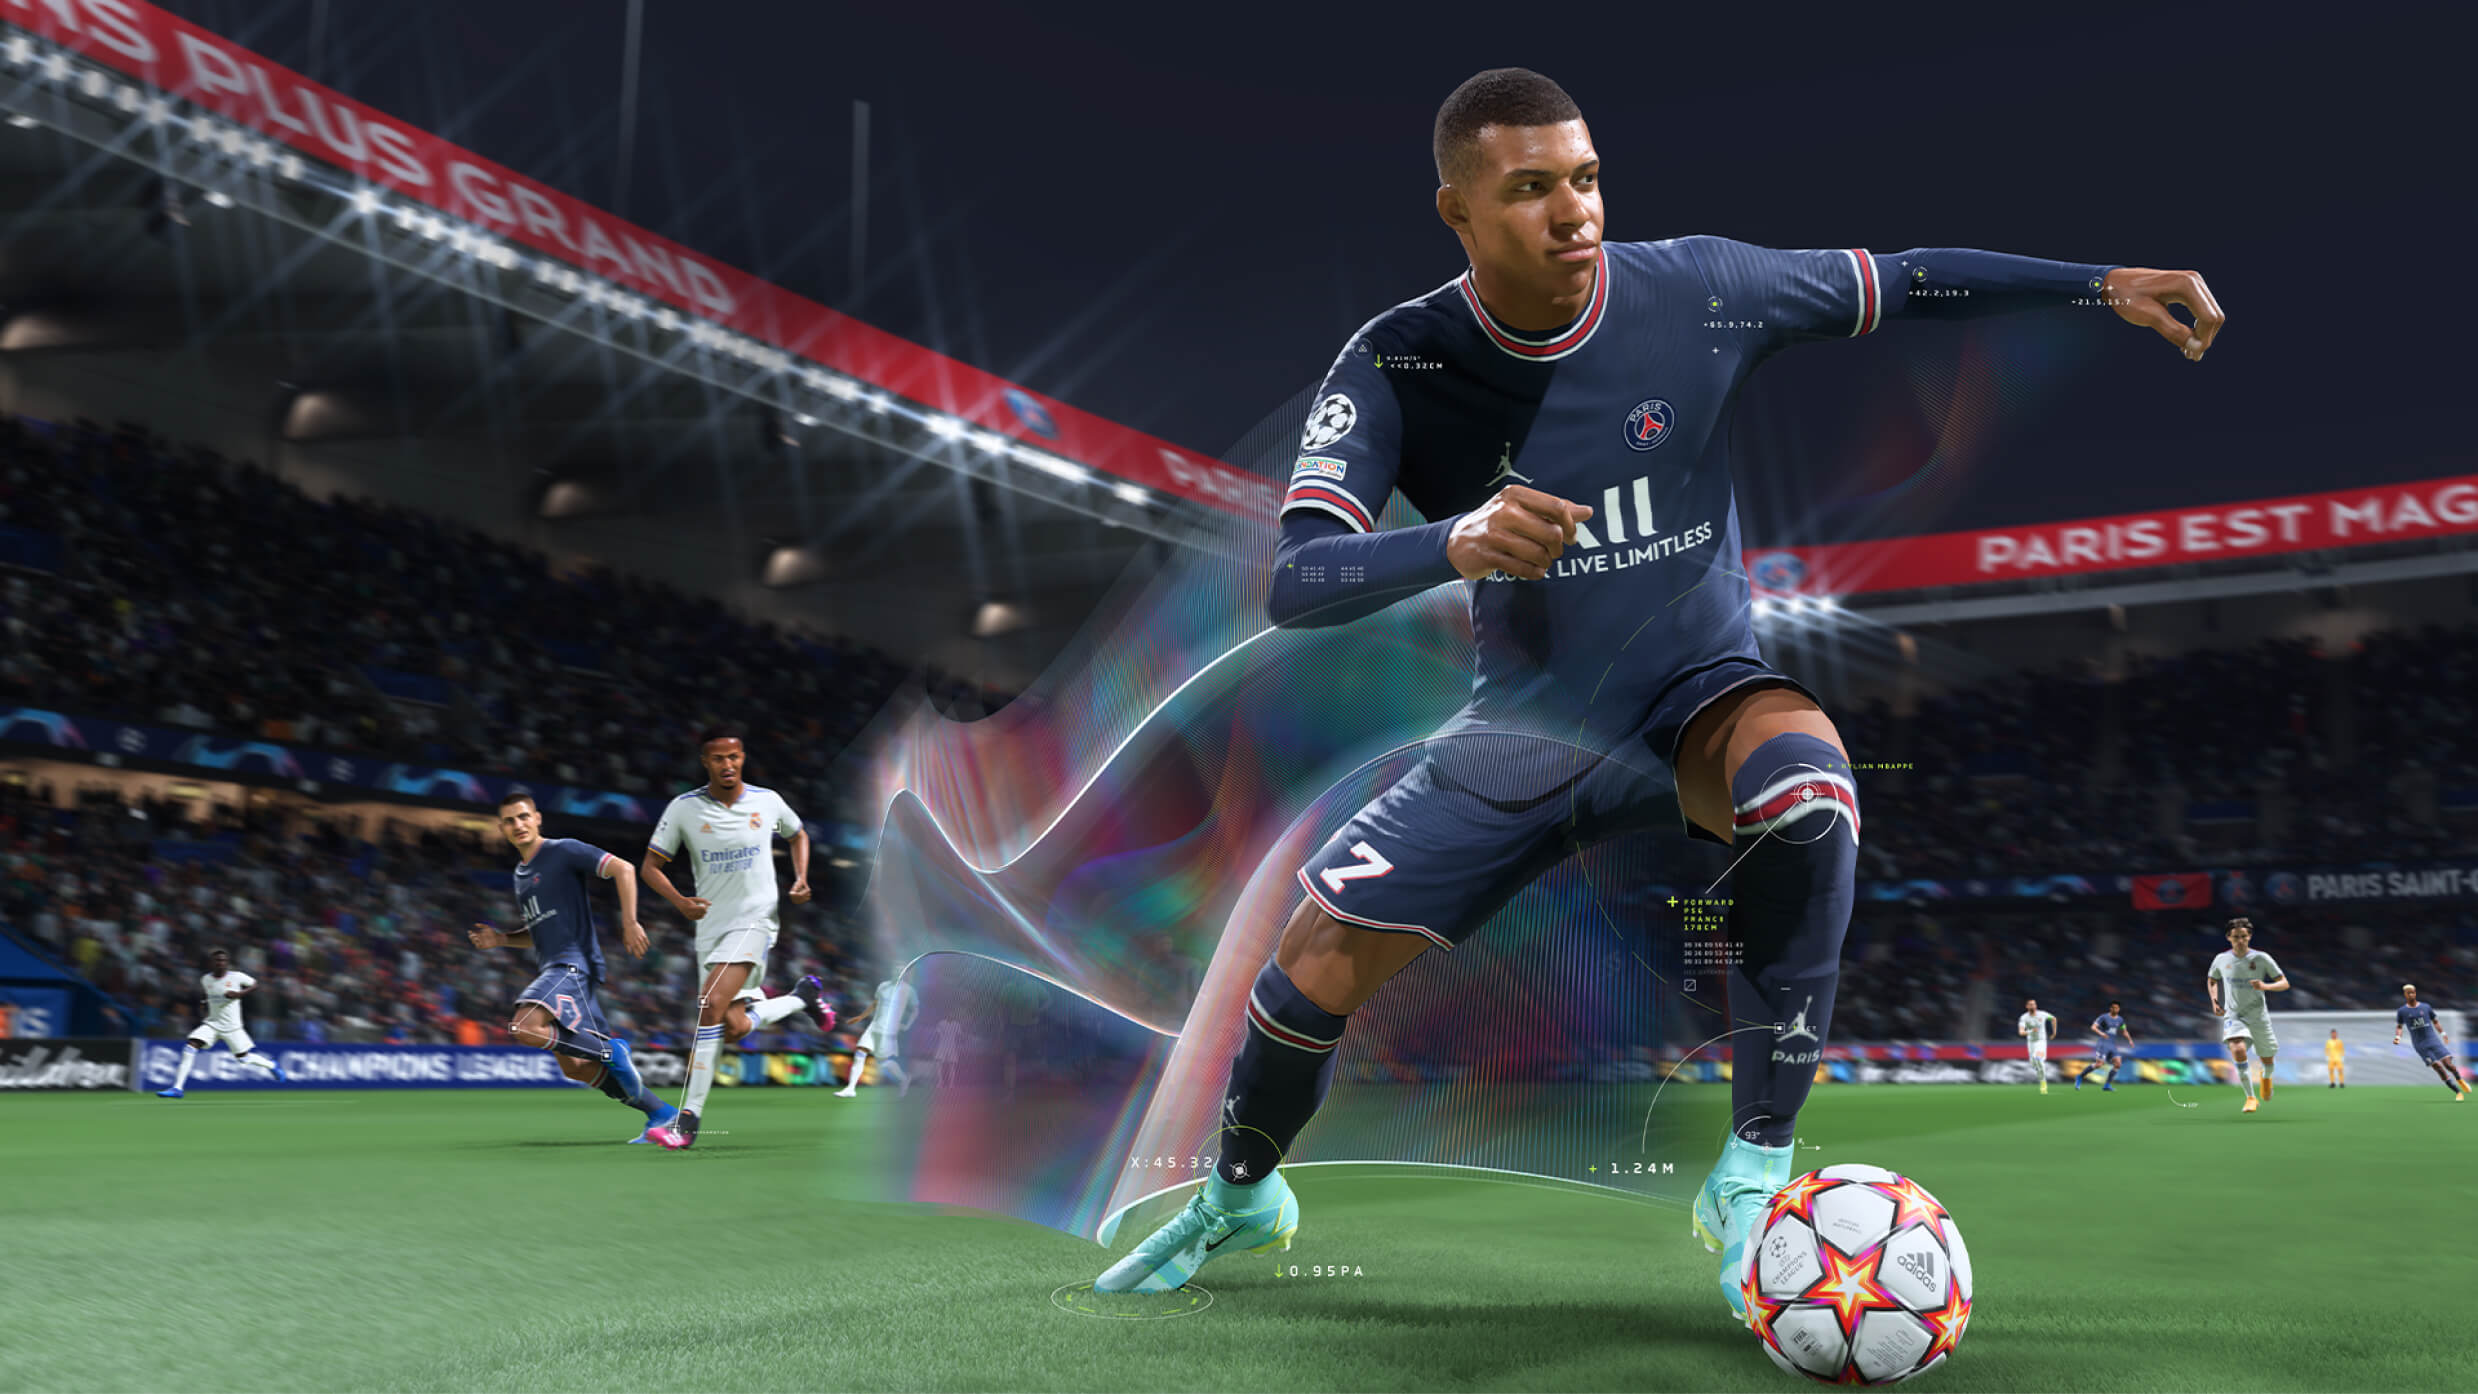 Gerücht: 2K erhält FIFA-Lizenz für neues Spiel noch in diesem Jahr